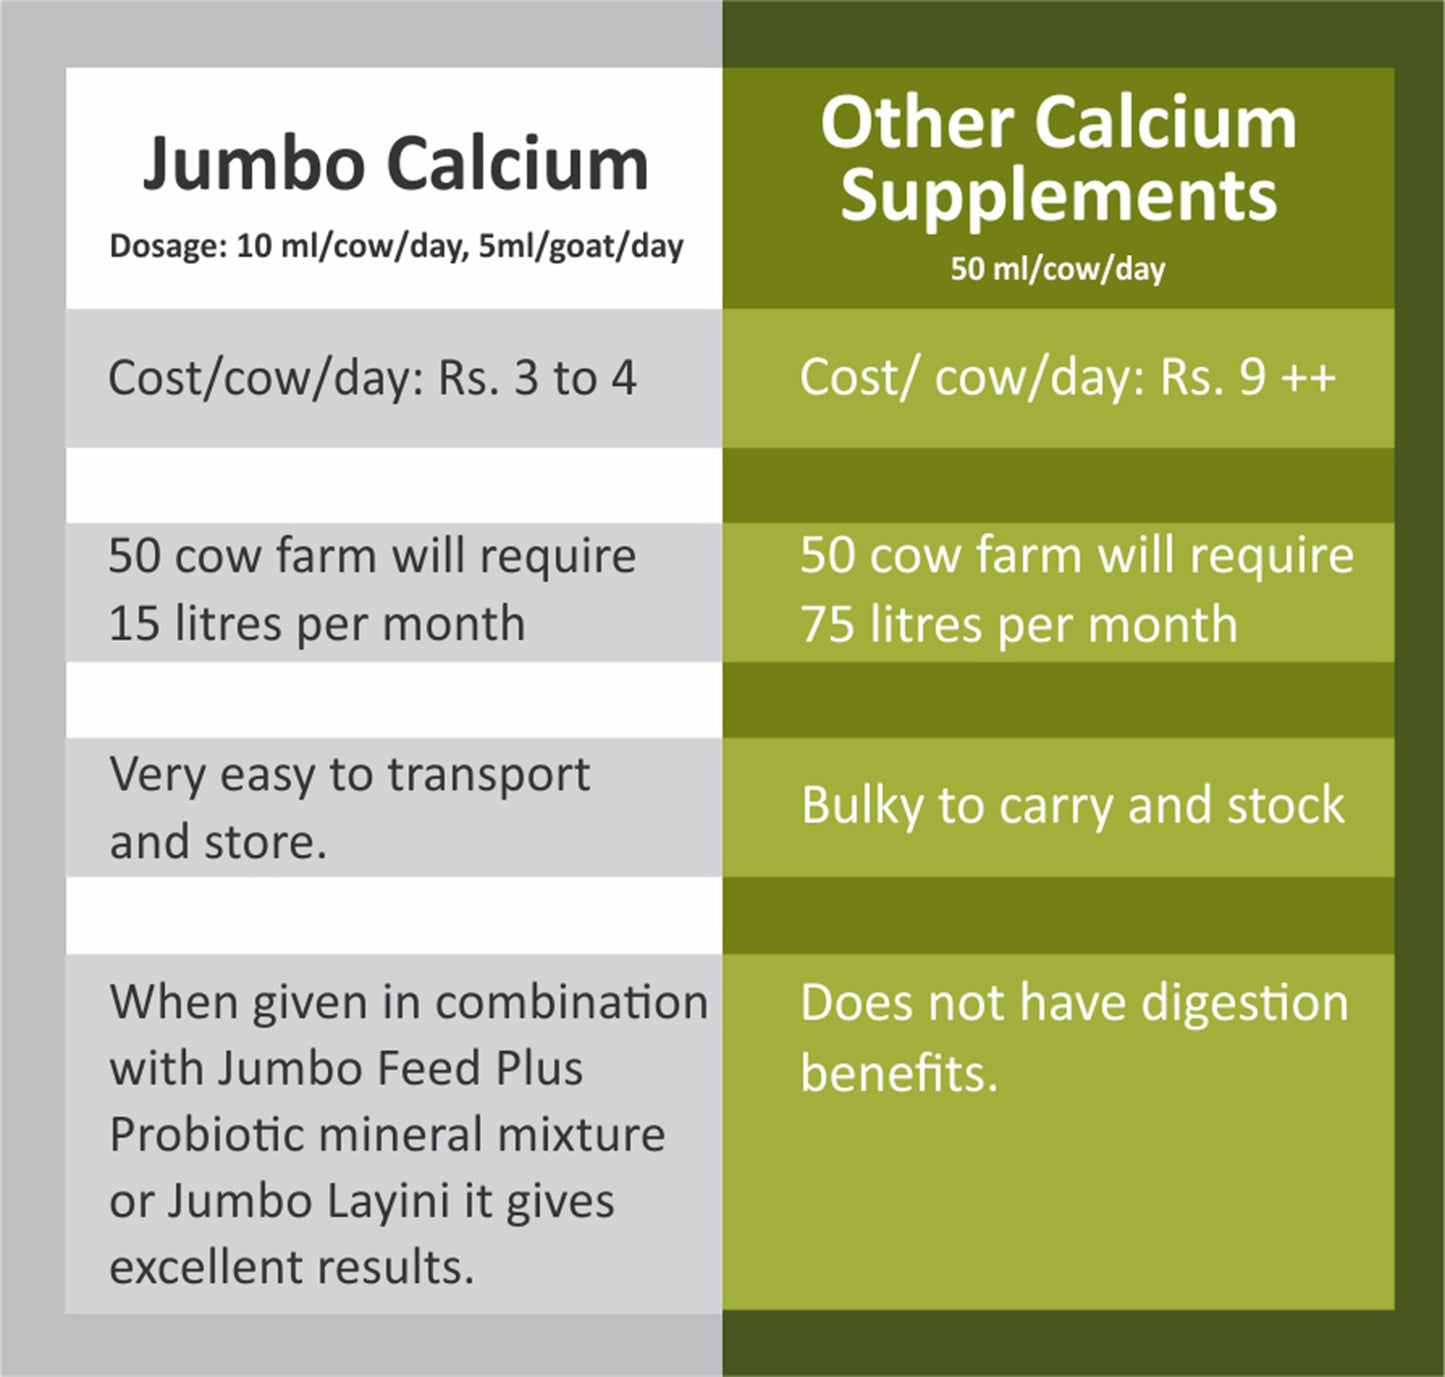 Jumbo Calcium + Vitamins Cattle 1 Ltr